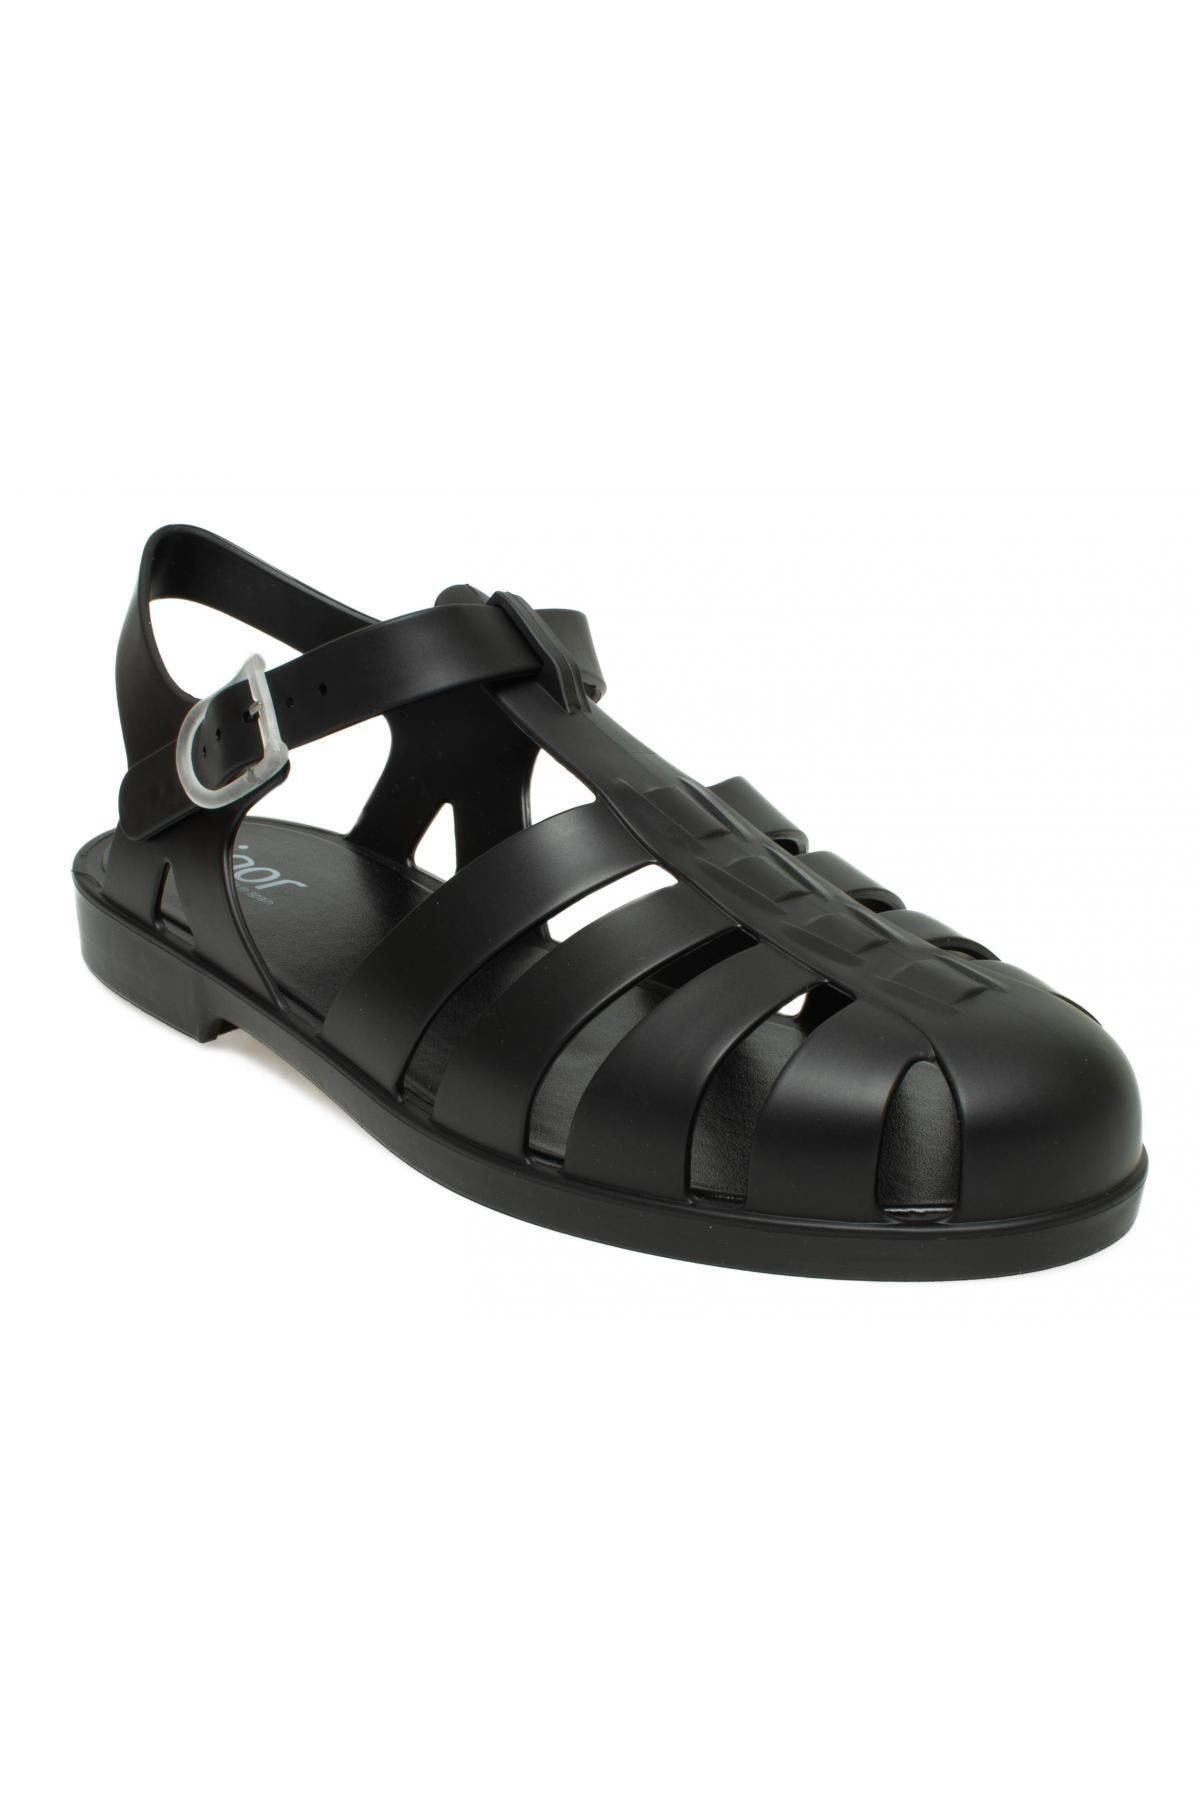 IGOR S10259 Biarritz Mate Siyah Kadın Sandalet